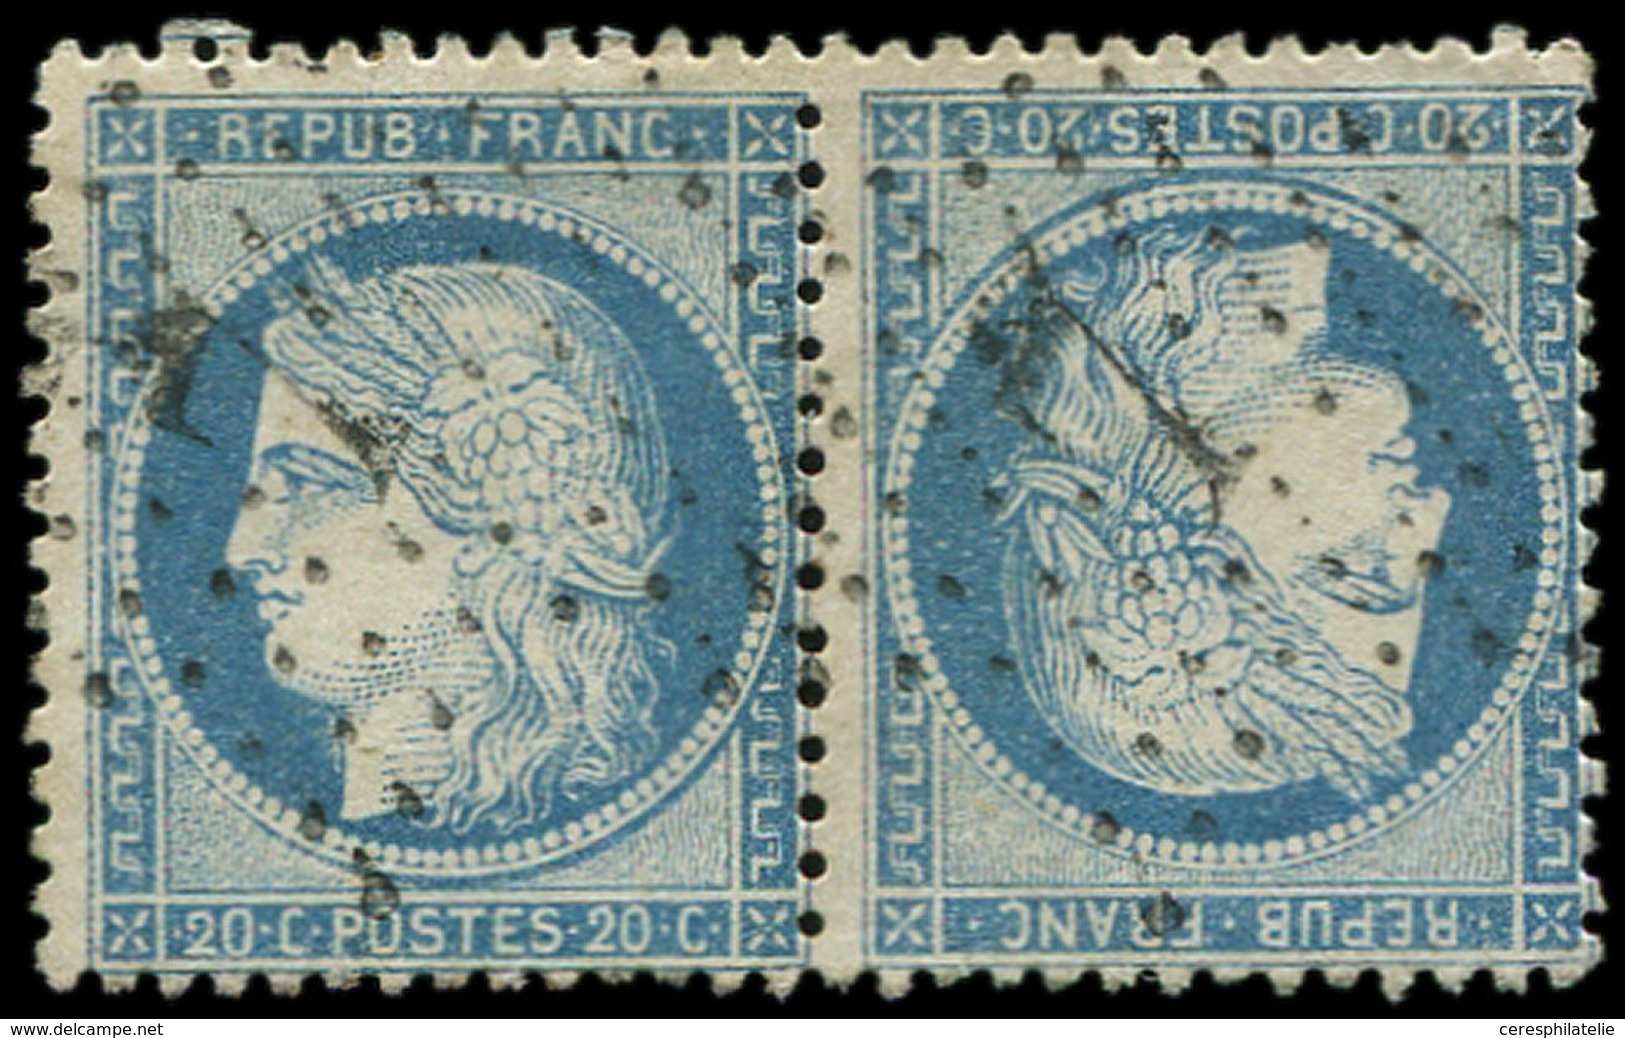 SIEGE DE PARIS - T37c 20c. Bleu, TETE-BECHE Obl. Etoile 7, Déf. Dans Un Angle, Aspect TB - 1870 Siège De Paris